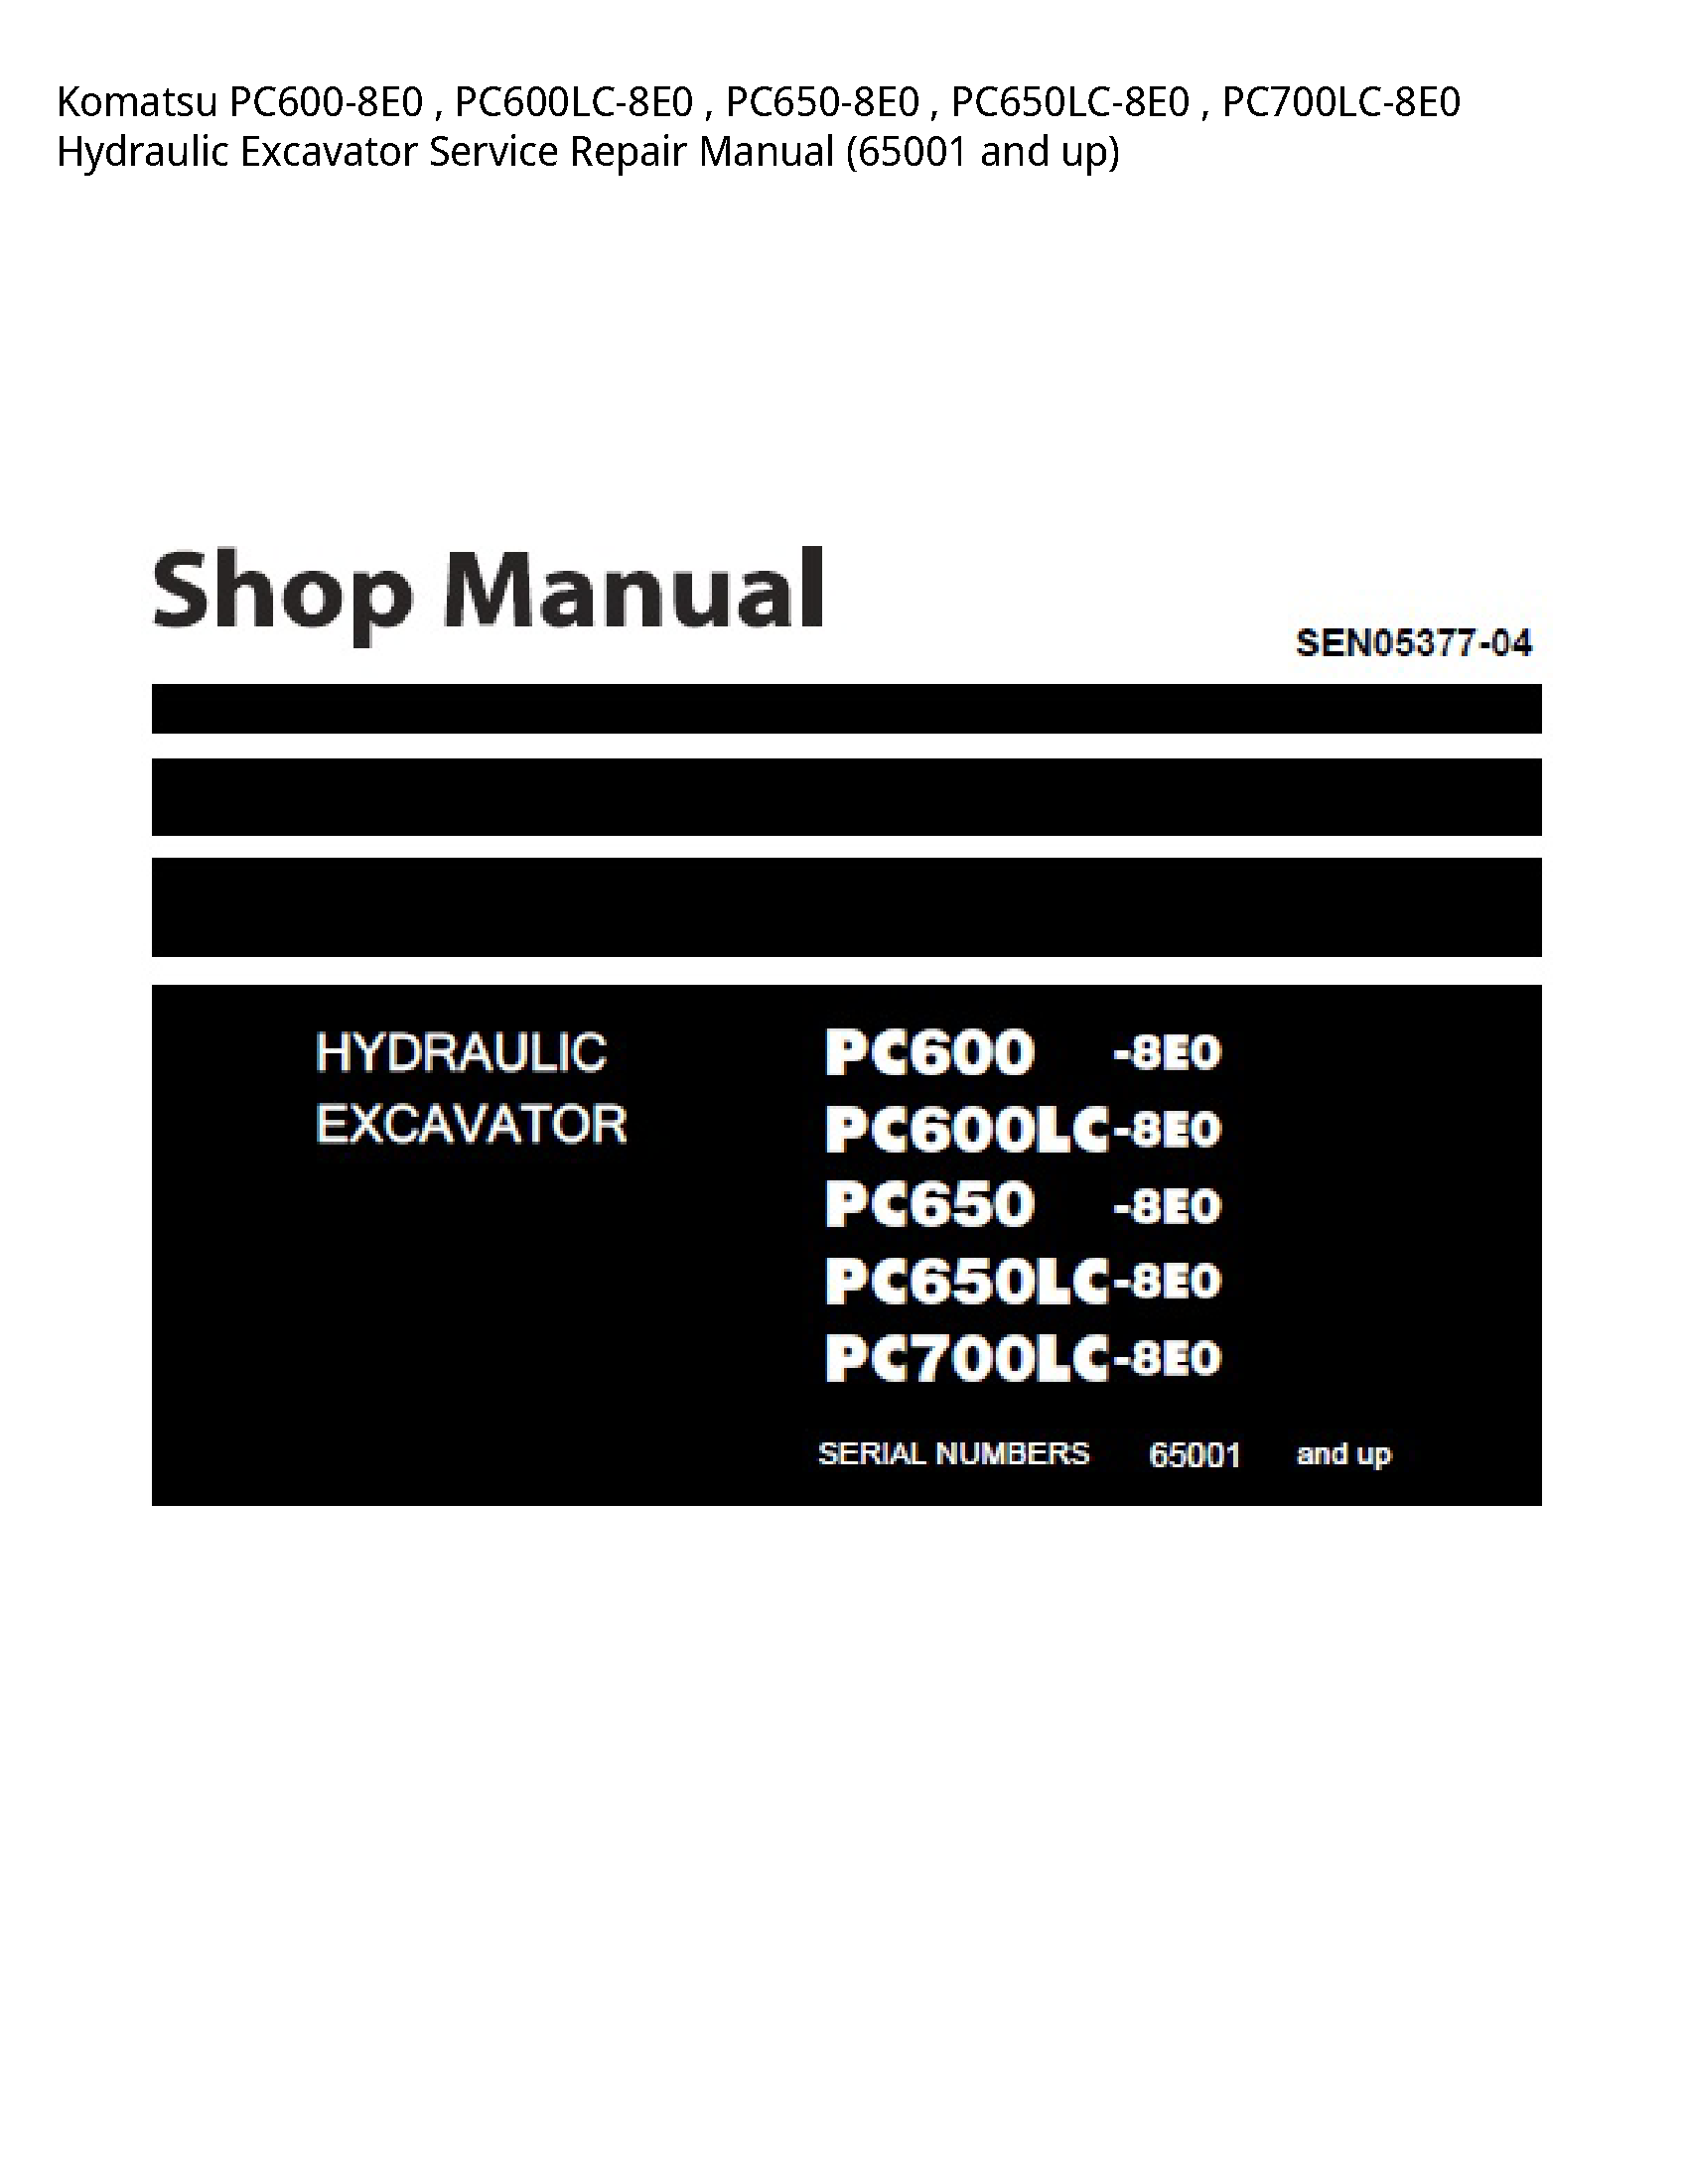 KOMATSU PC600-8E0 Hydraulic Excavator manual